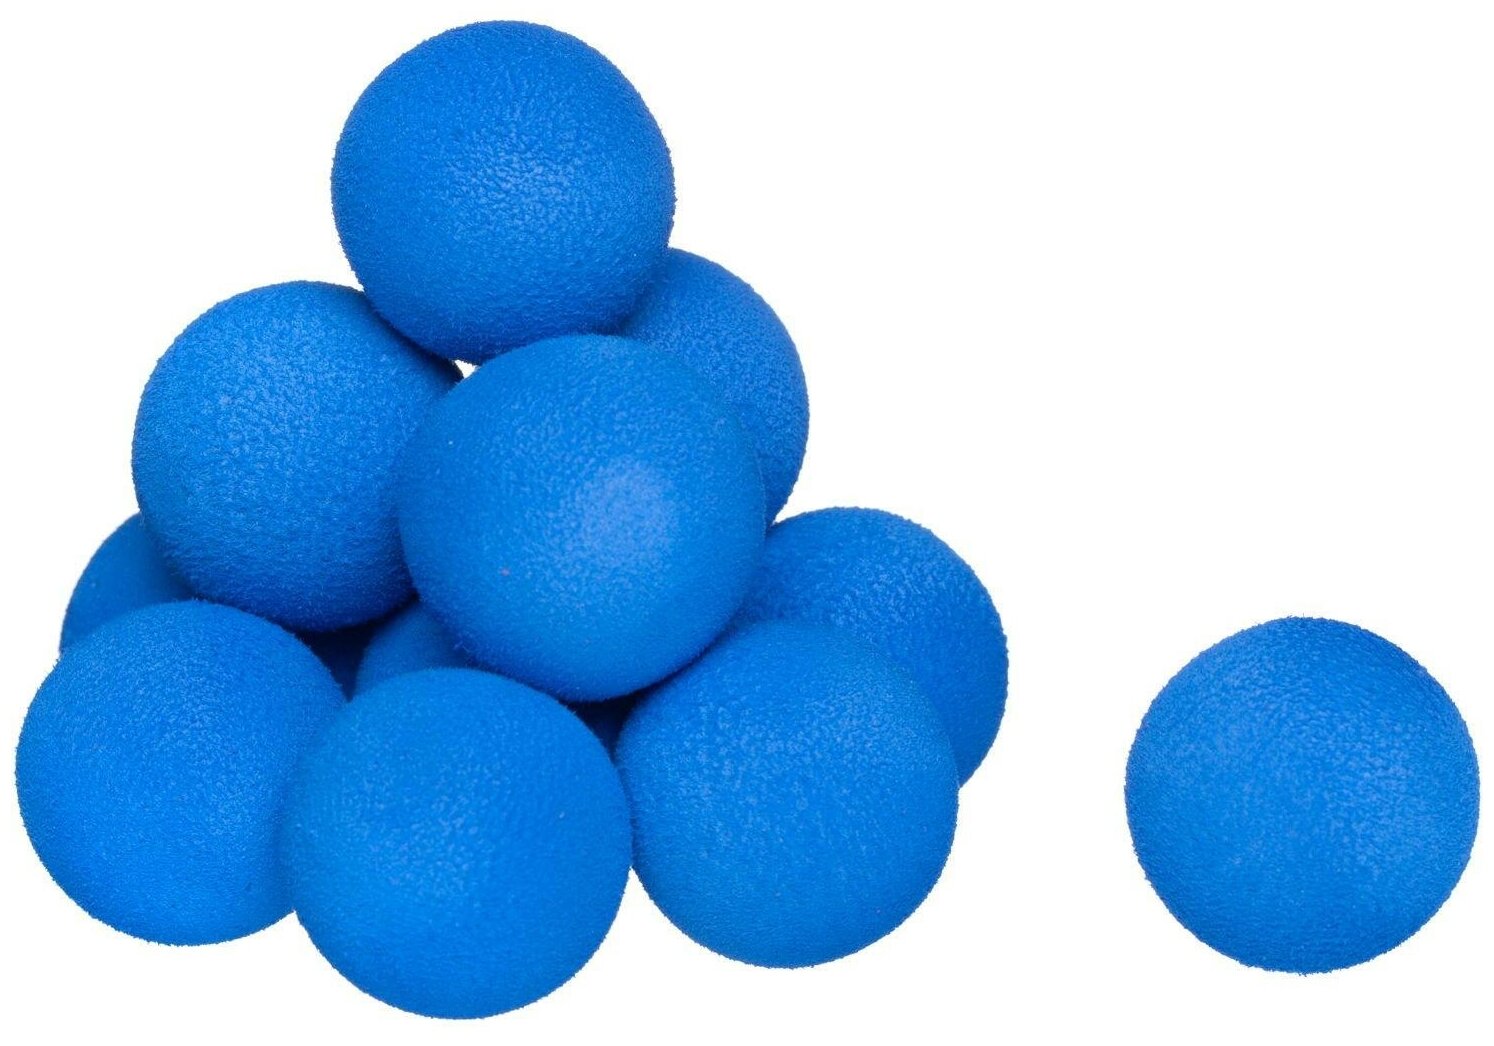 Бластер Junfa штурмовой c 12 мягкими шариками и 3 банками-мишенями, голубой WG-11233/голубой